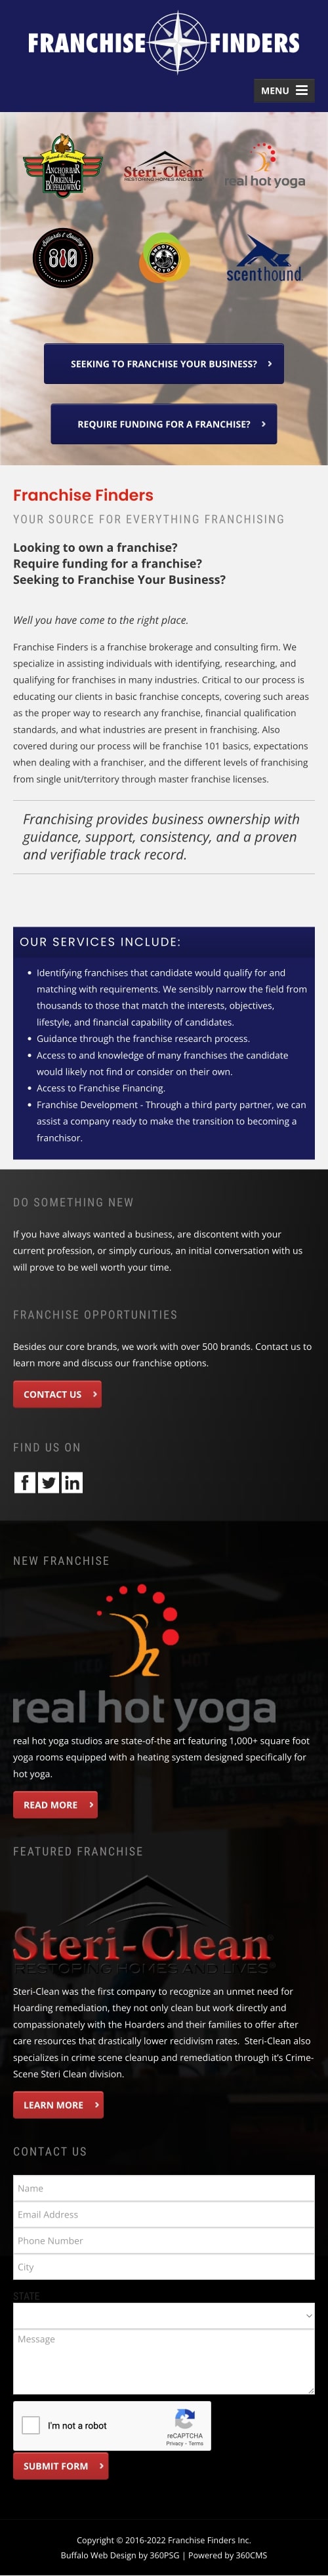 Franchise Finders Website - Mobile